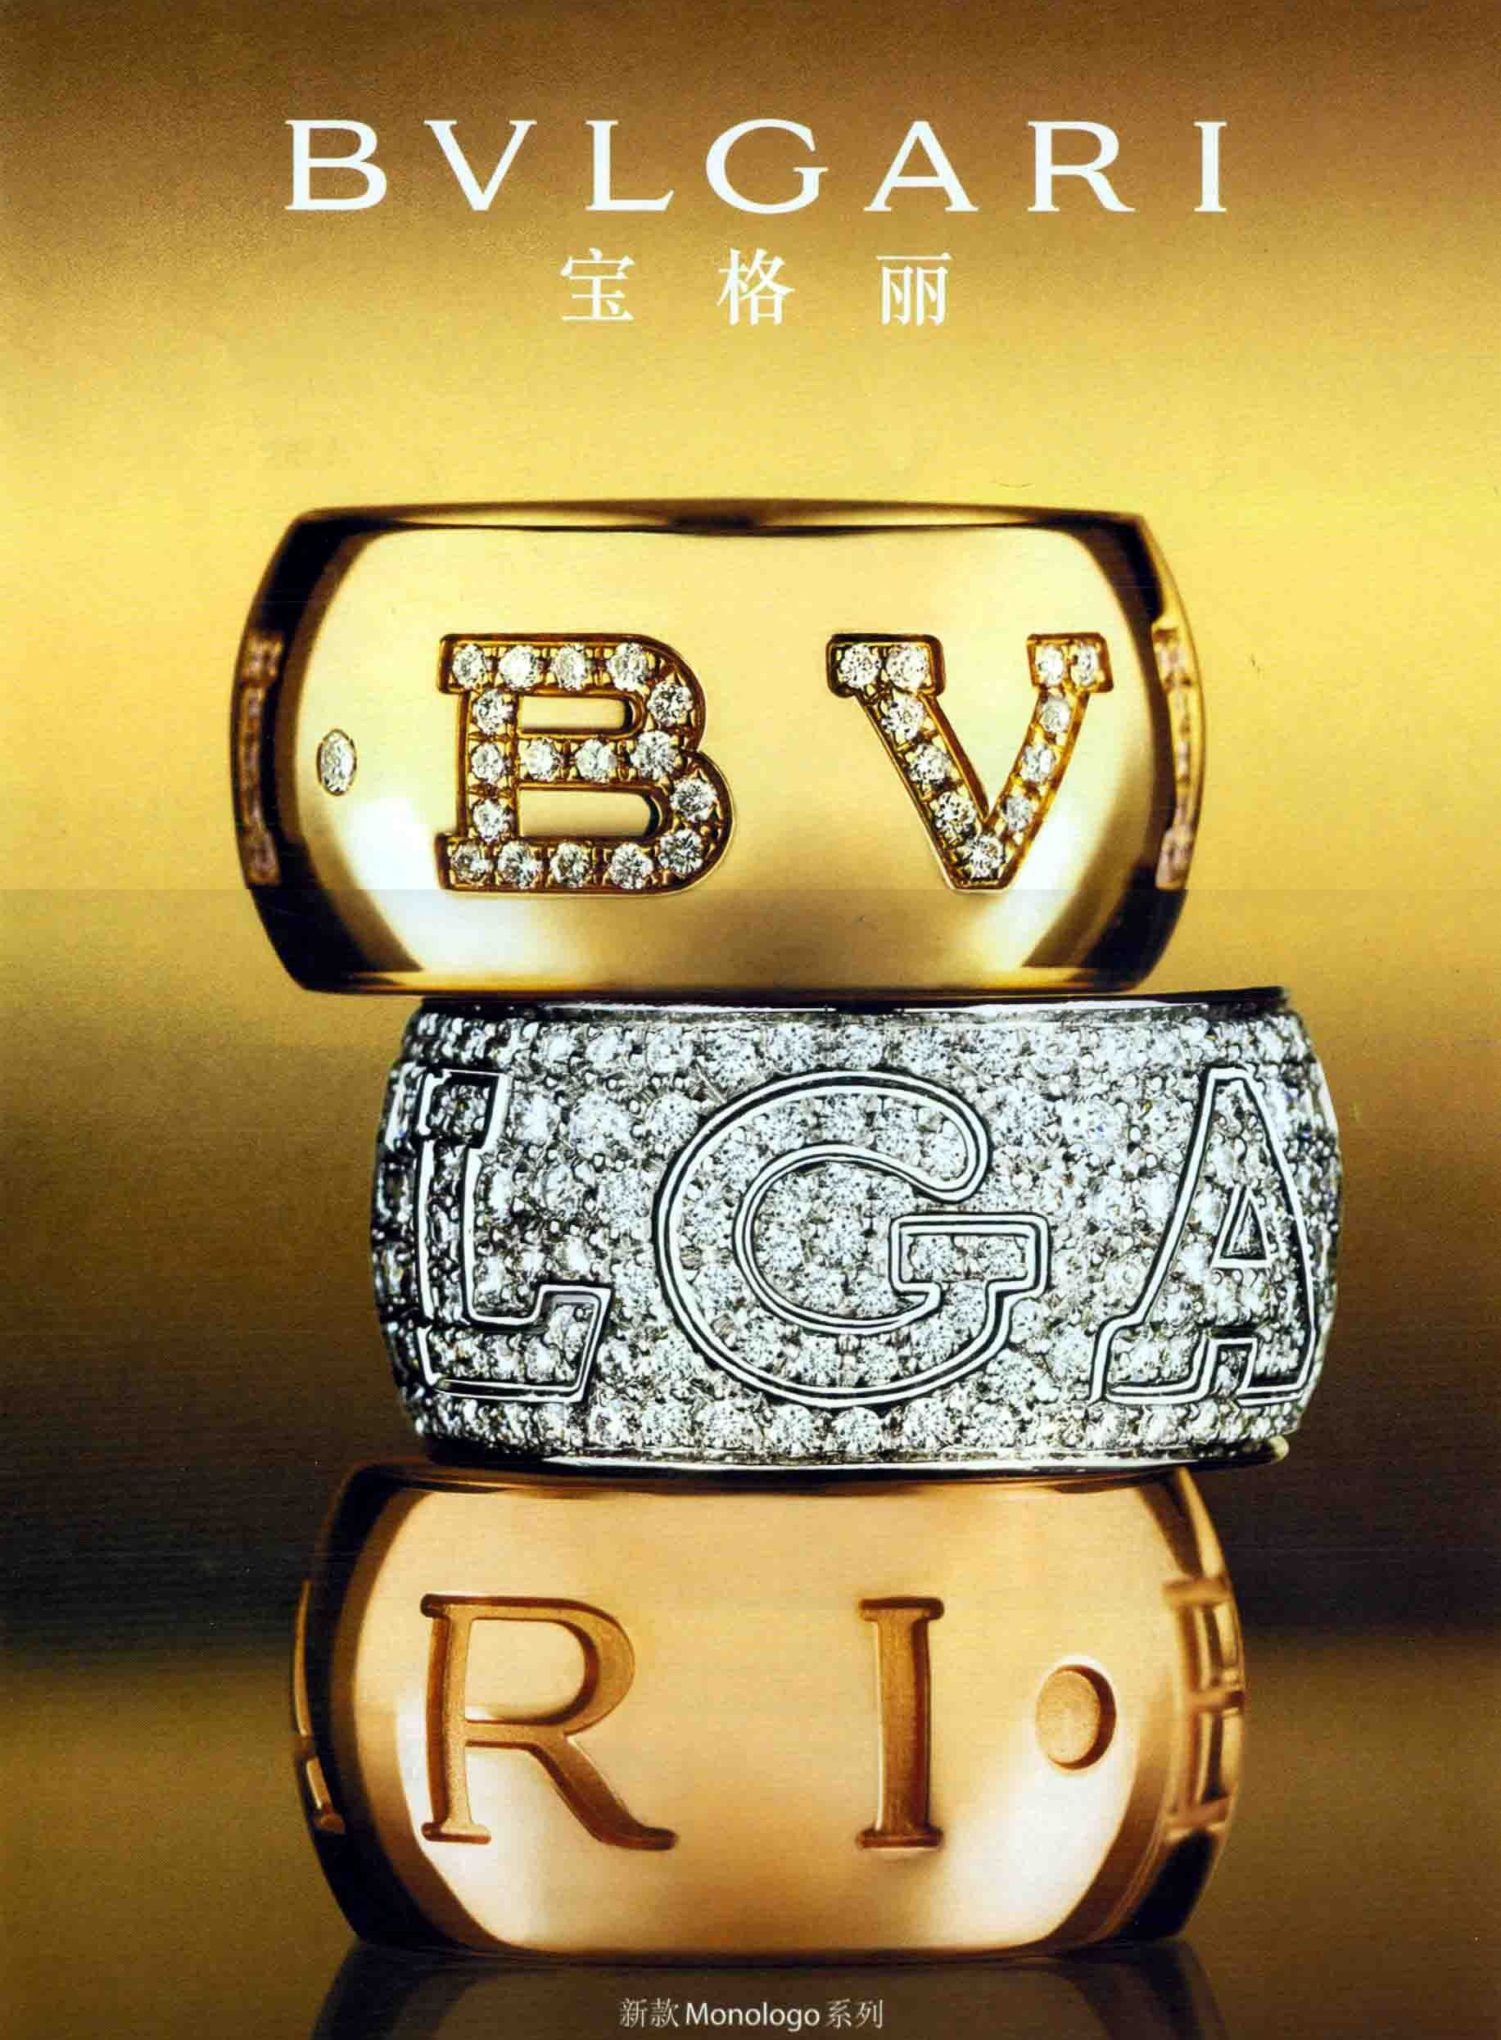 China Focus on BVLGARI, Jewelry from 